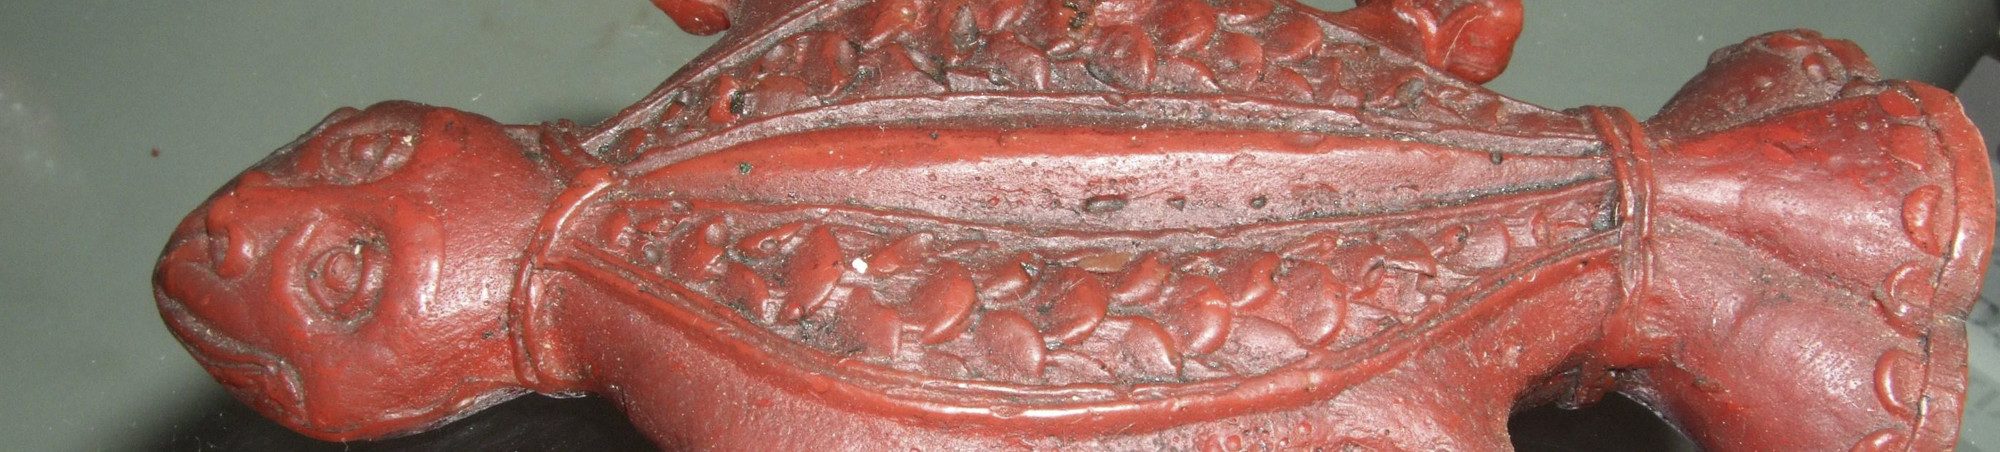 Stark stilisierte Kröte mit Affengesicht aus rotem Wachs